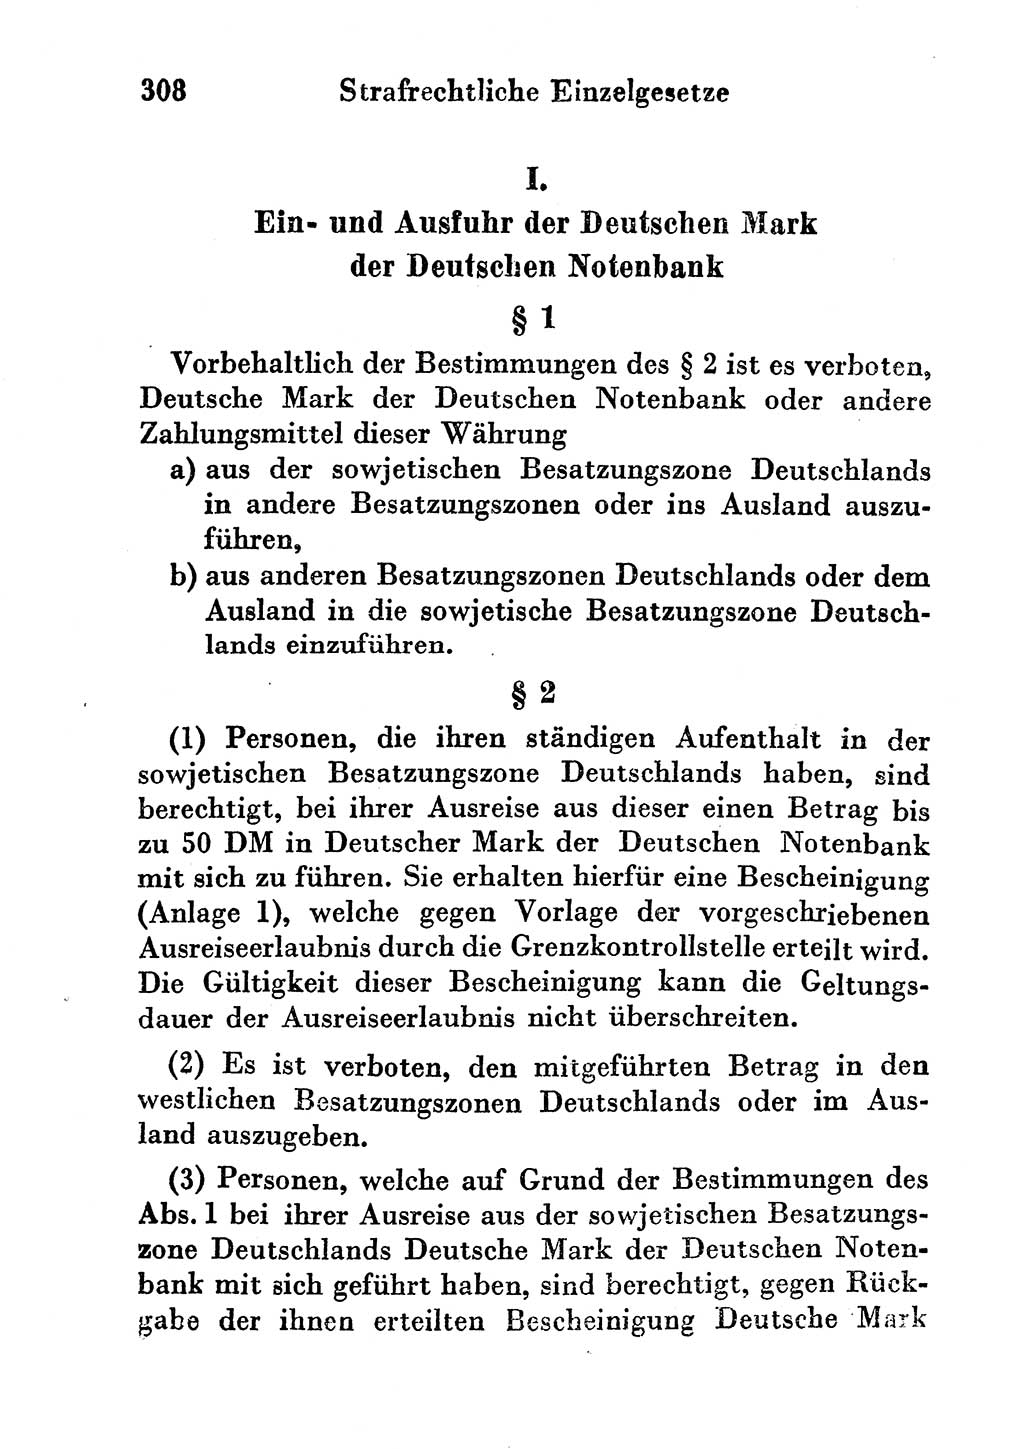 Strafgesetzbuch (StGB) und andere Strafgesetze [Deutsche Demokratische Republik (DDR)] 1956, Seite 308 (StGB Strafges. DDR 1956, S. 308)